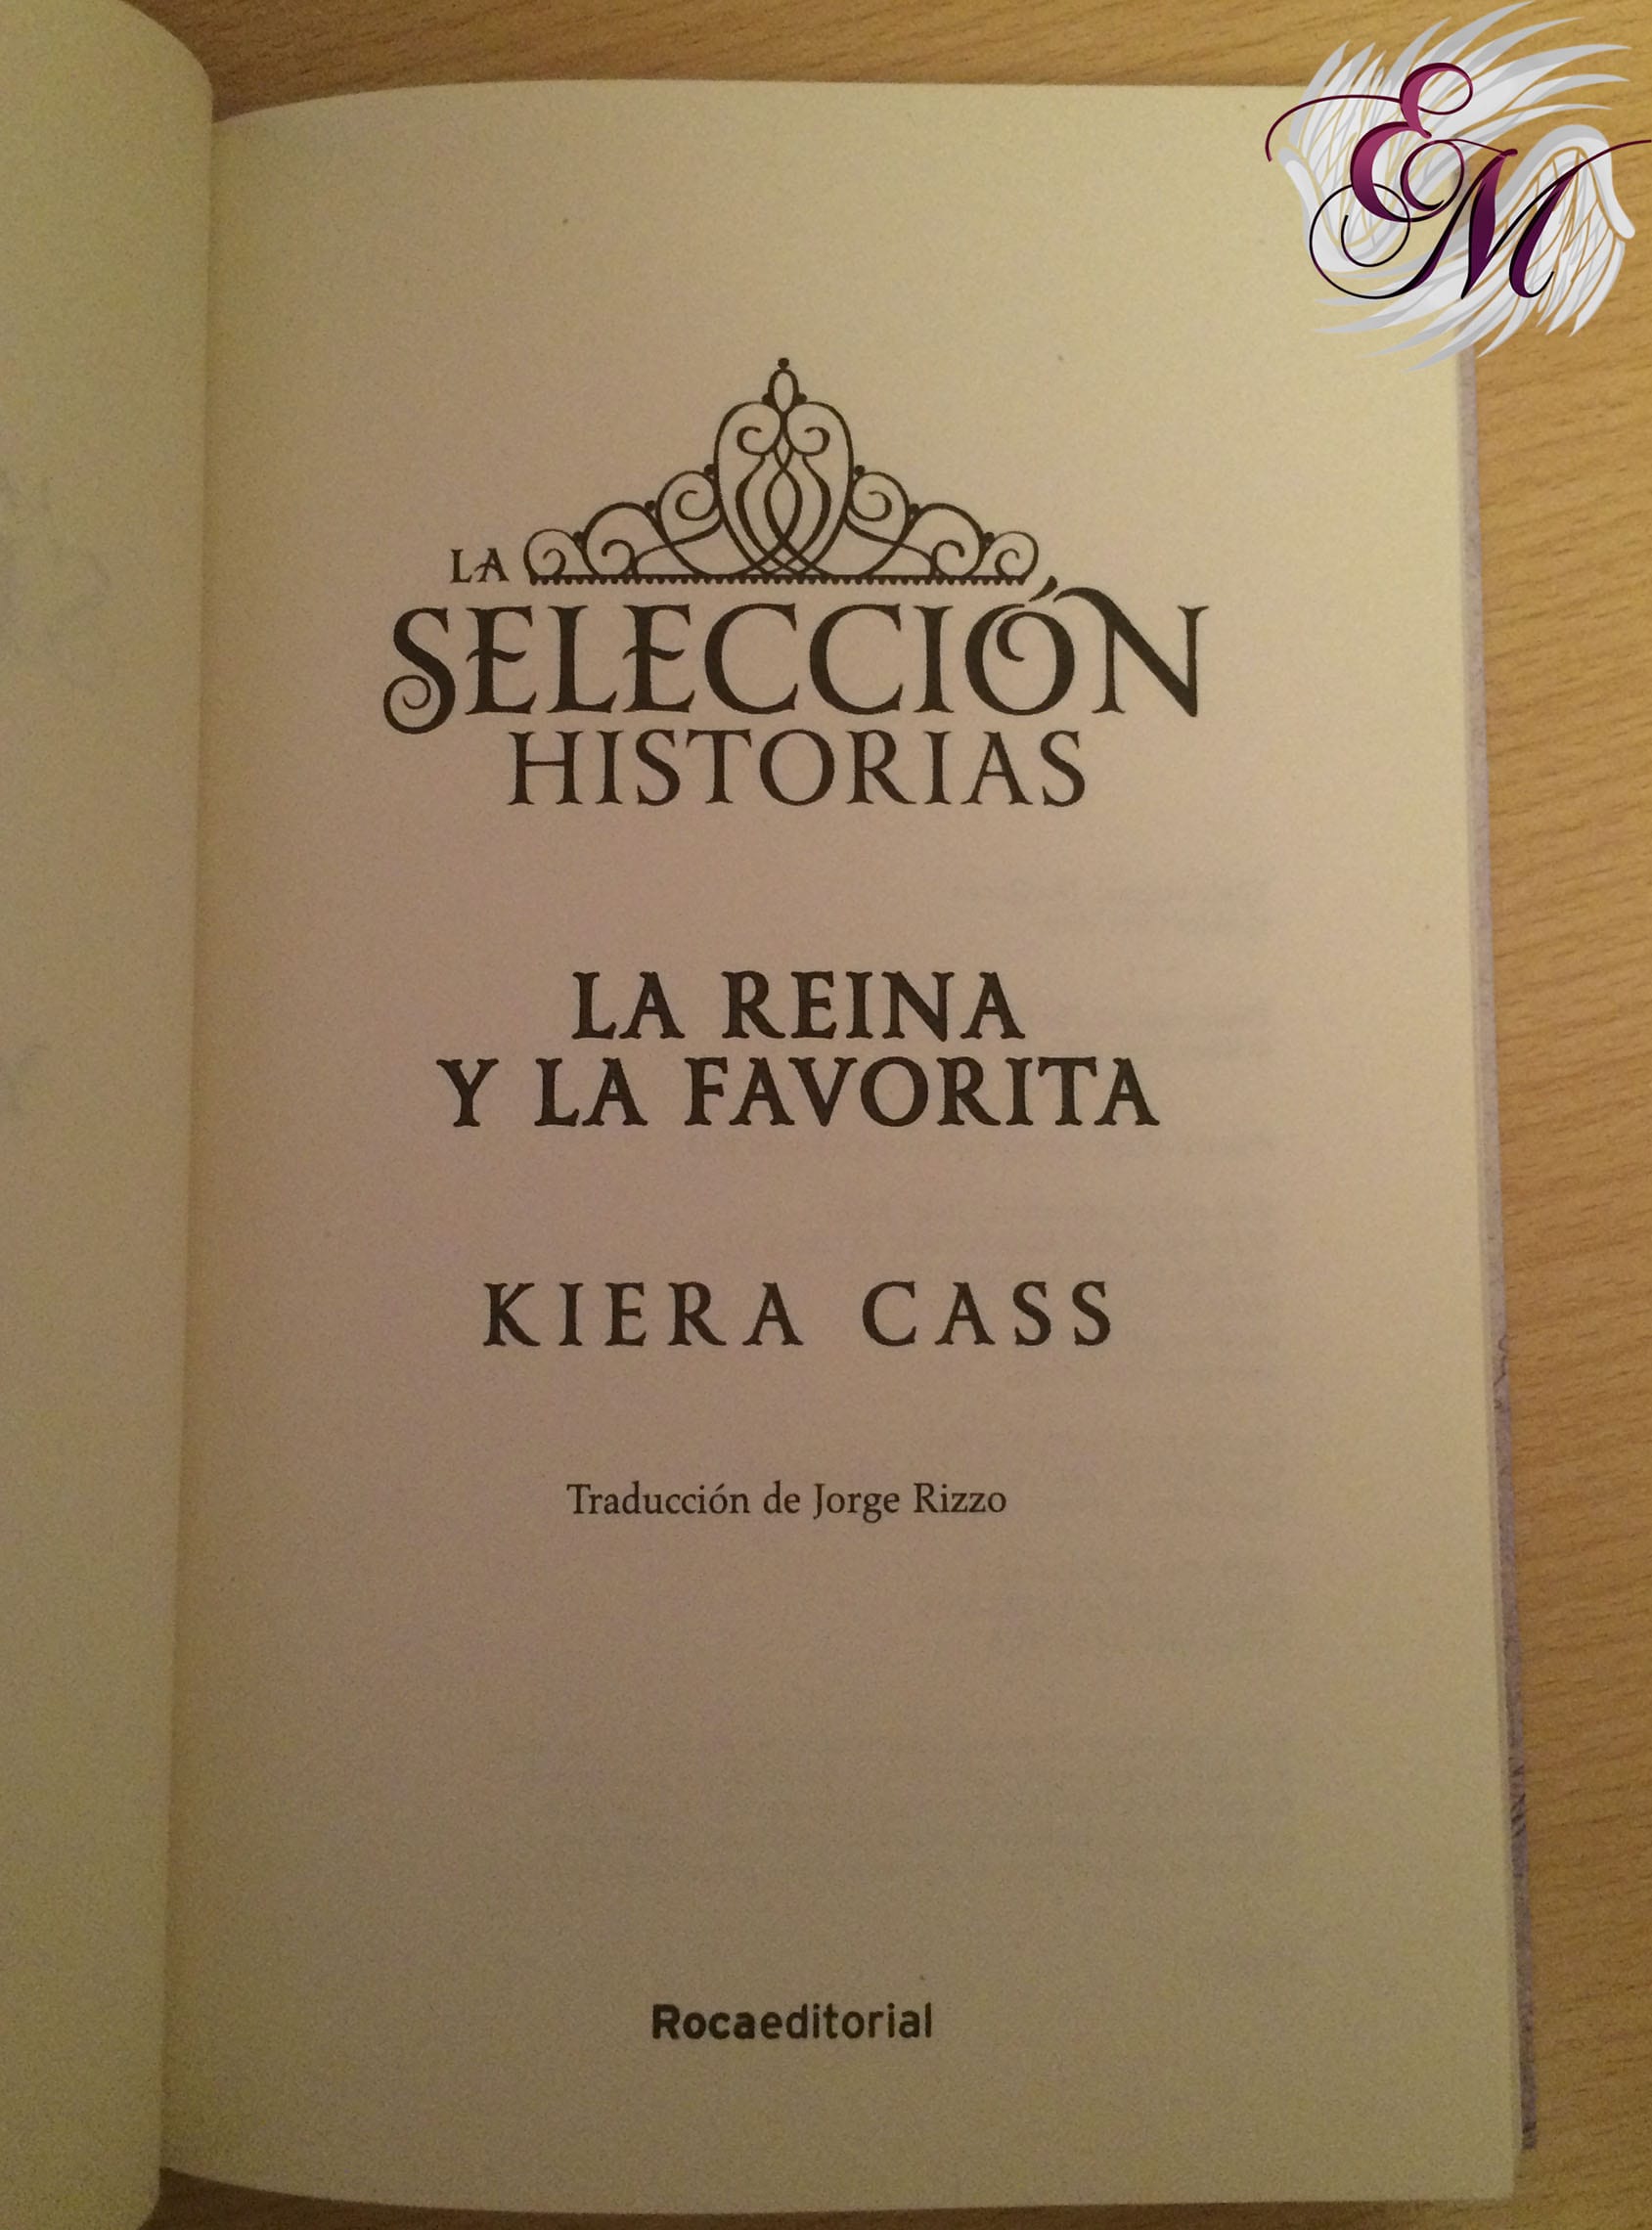 La selección historias: La reina y la favorita, de Kiera Cass - Reseña